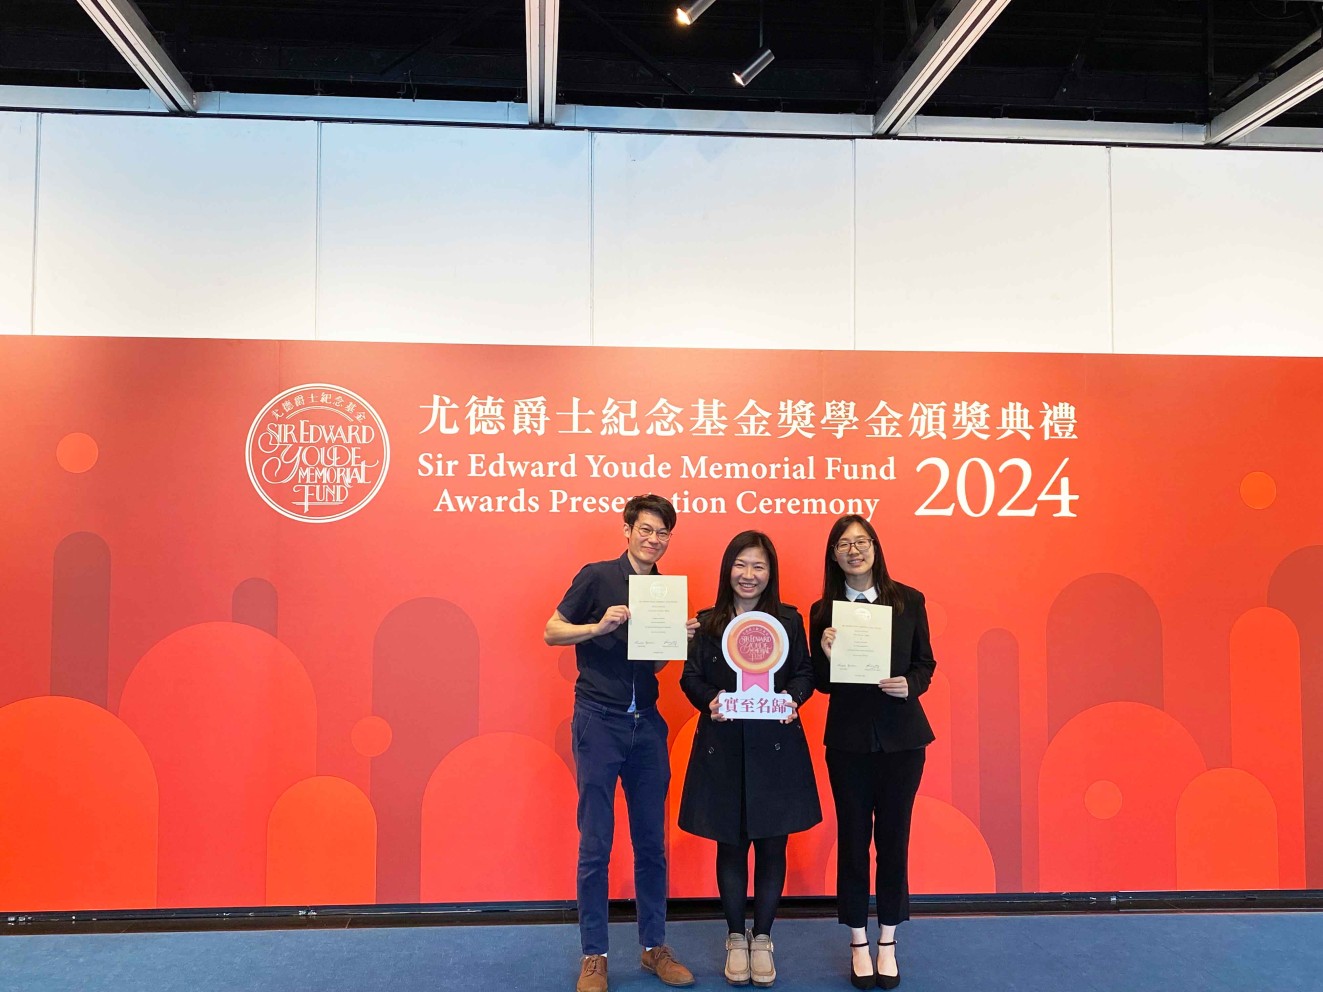 兩位嶺大得獎同學與學生事務副總監王麗珠女士（中），一同出席了於3月24日在香港大會堂舉行的尤德爵士紀念基金第37屆獎學金頒獎典禮。